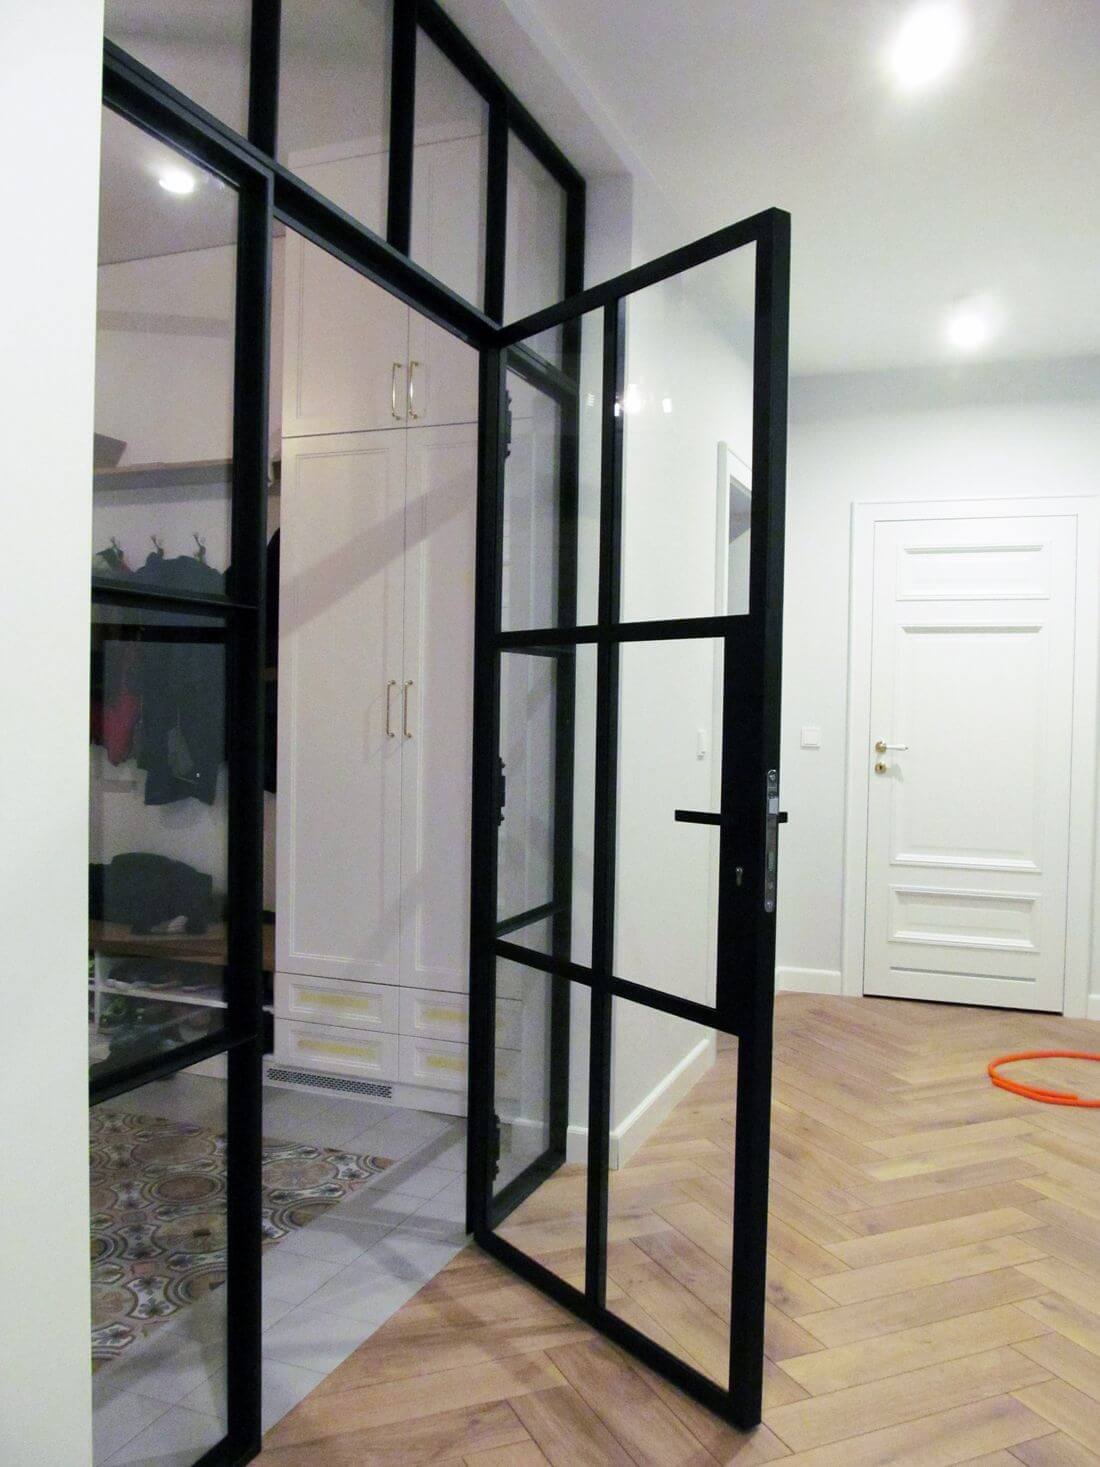 Glass Swing Loft Doors with Loft Walls - view from corridor to open closed door